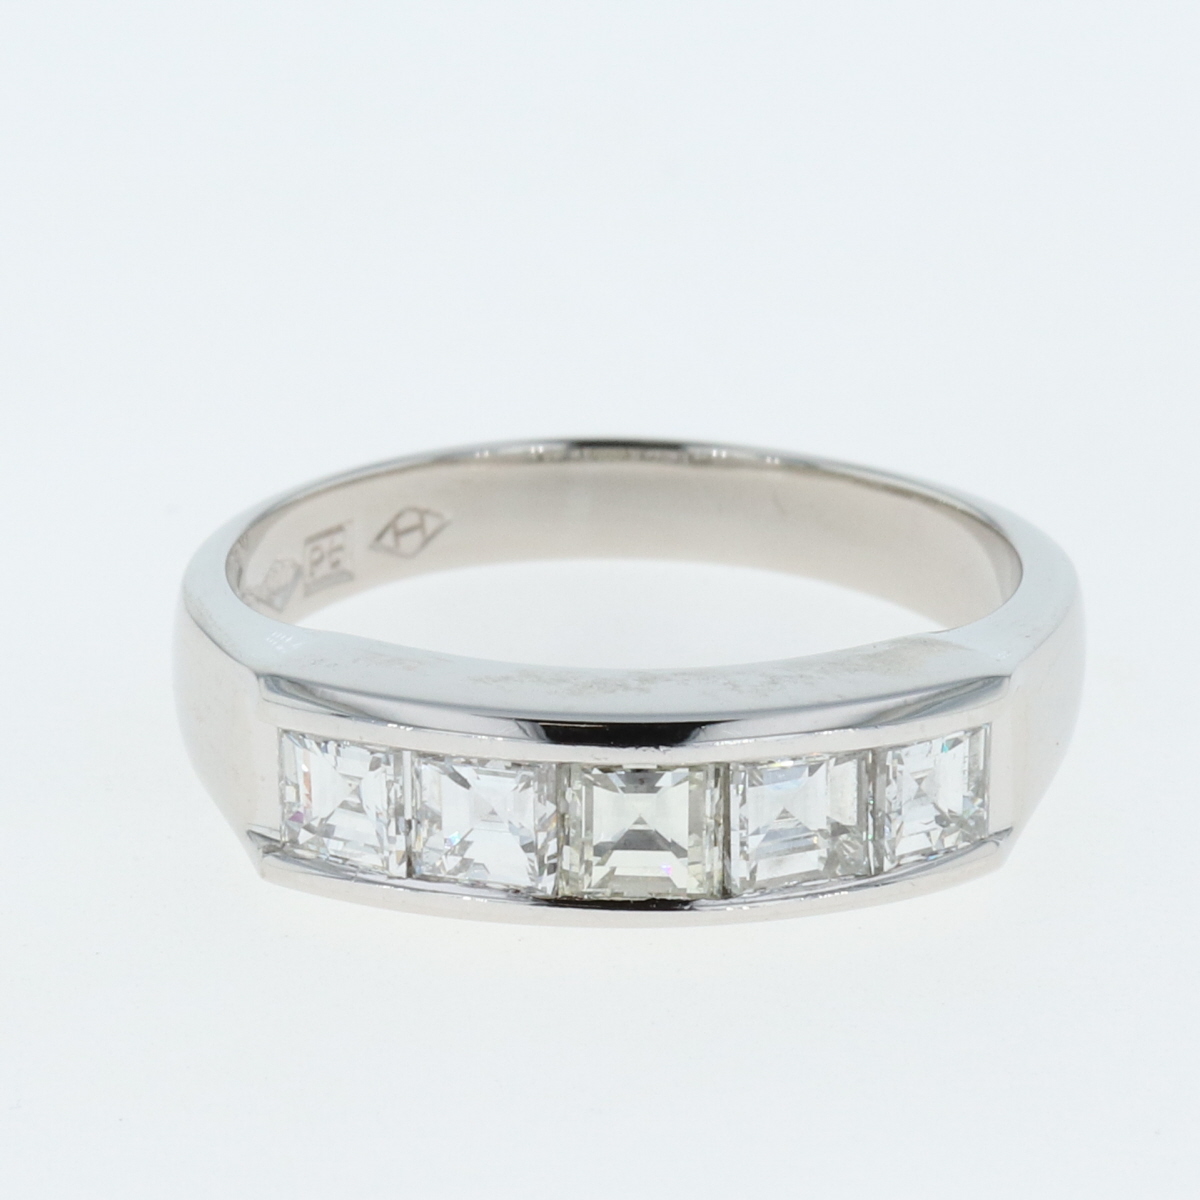 15179円 『3年保証』 メレダイヤ デザインリング プラチナ 指輪 リング 12号 Pt900 ダイヤモンド レディース